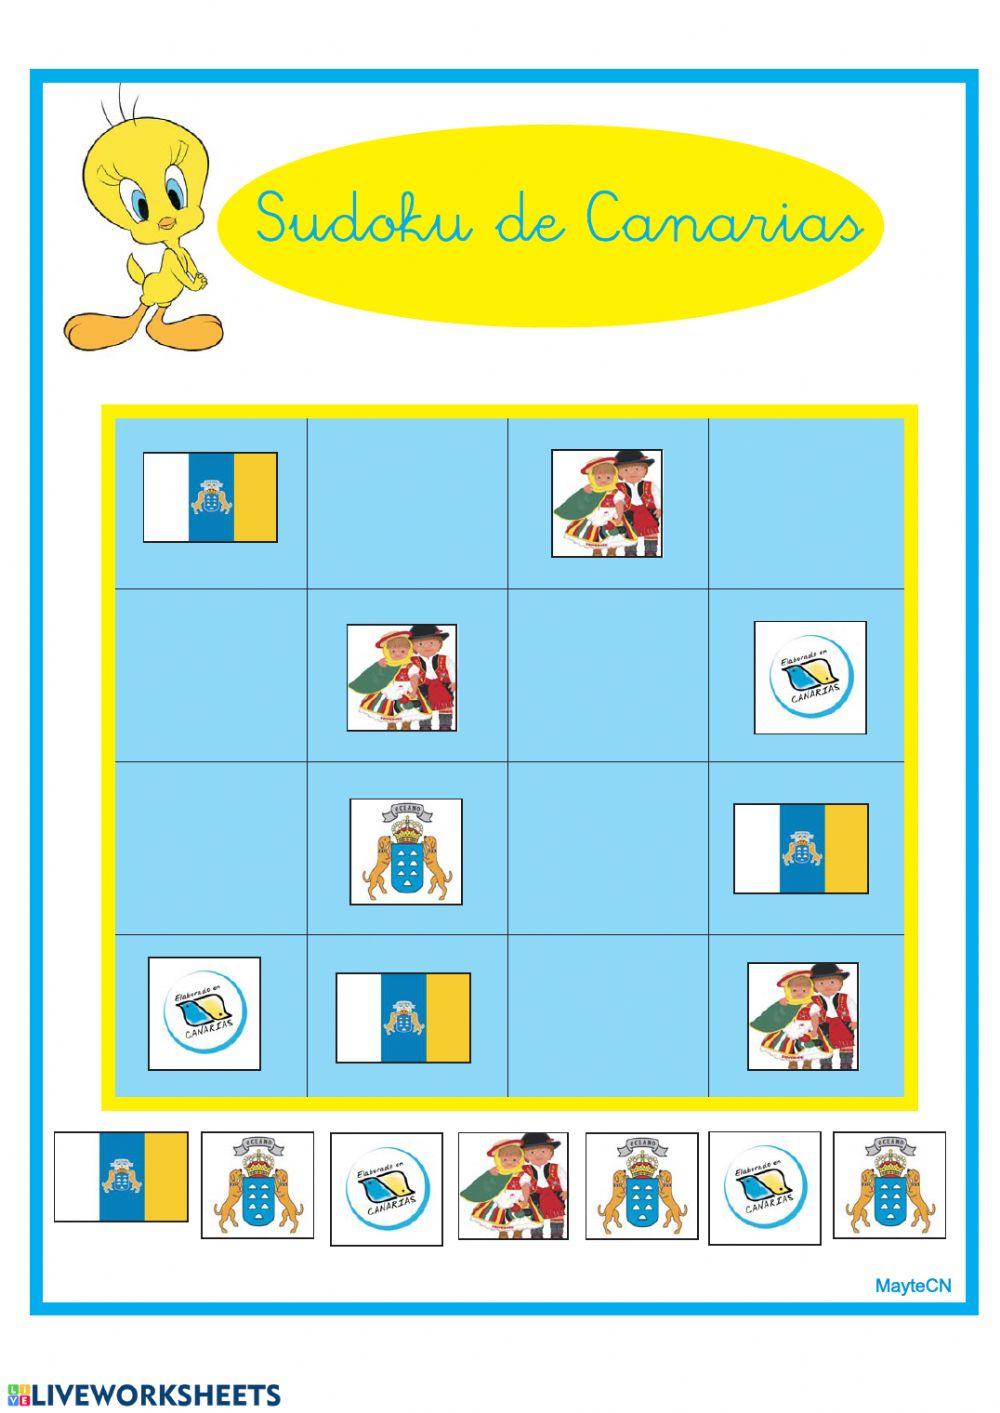 Sudoku de Canarias